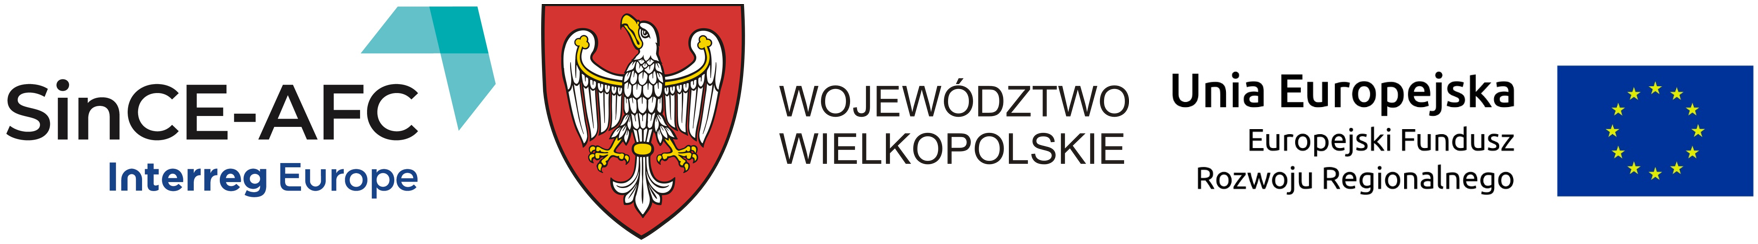 Logo SinCE Interreg Europe, Województwo Wielkopolskie, Europejski Fundusz Rozwoju Regionalnego